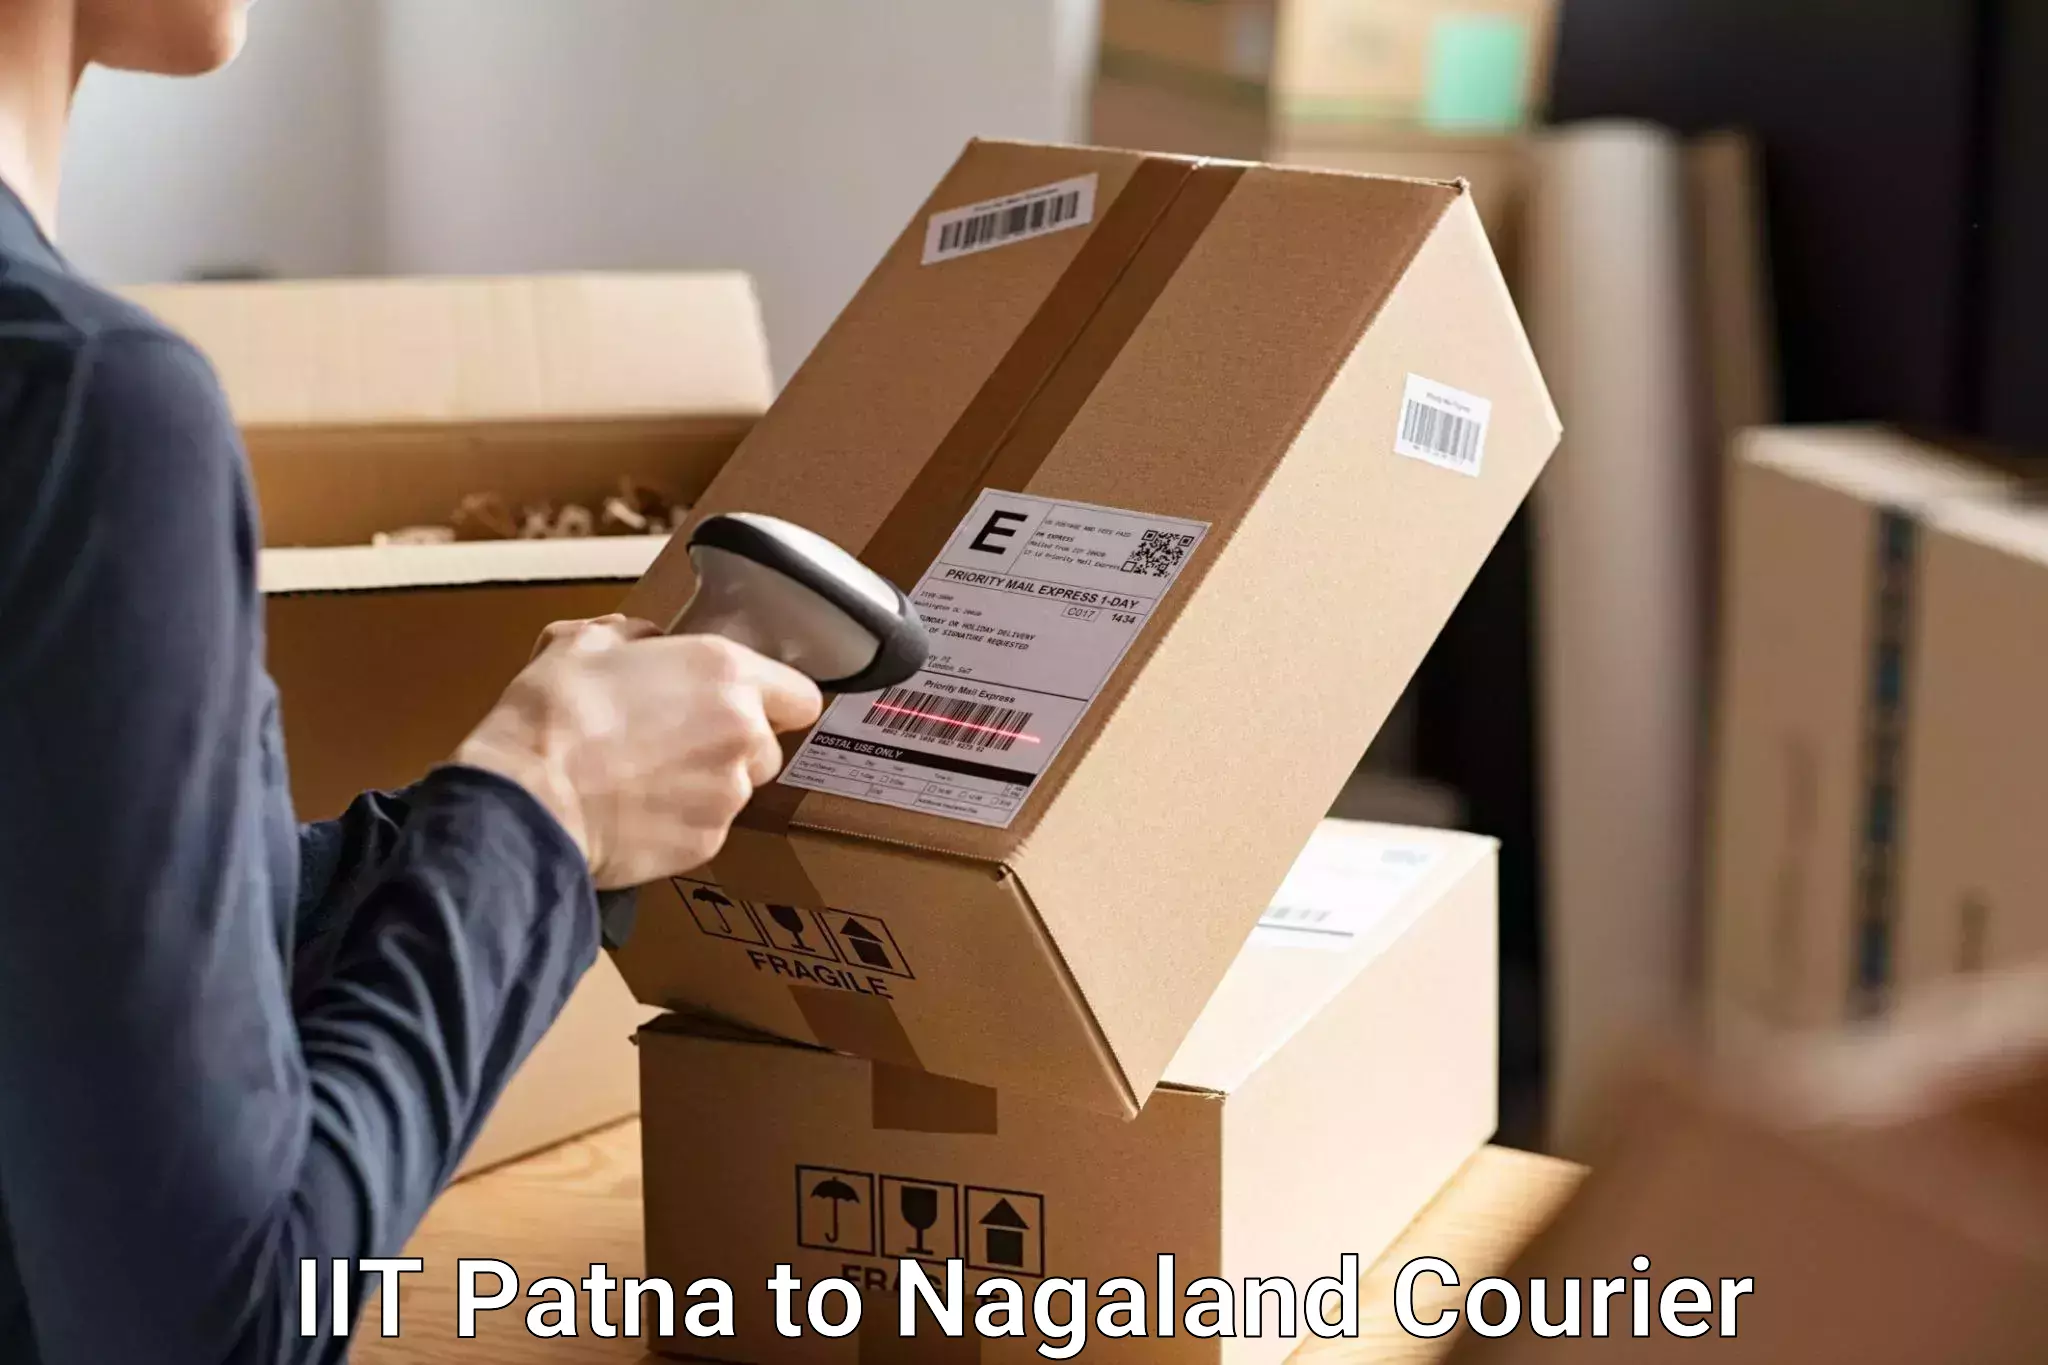 Luggage transport company IIT Patna to Wokha